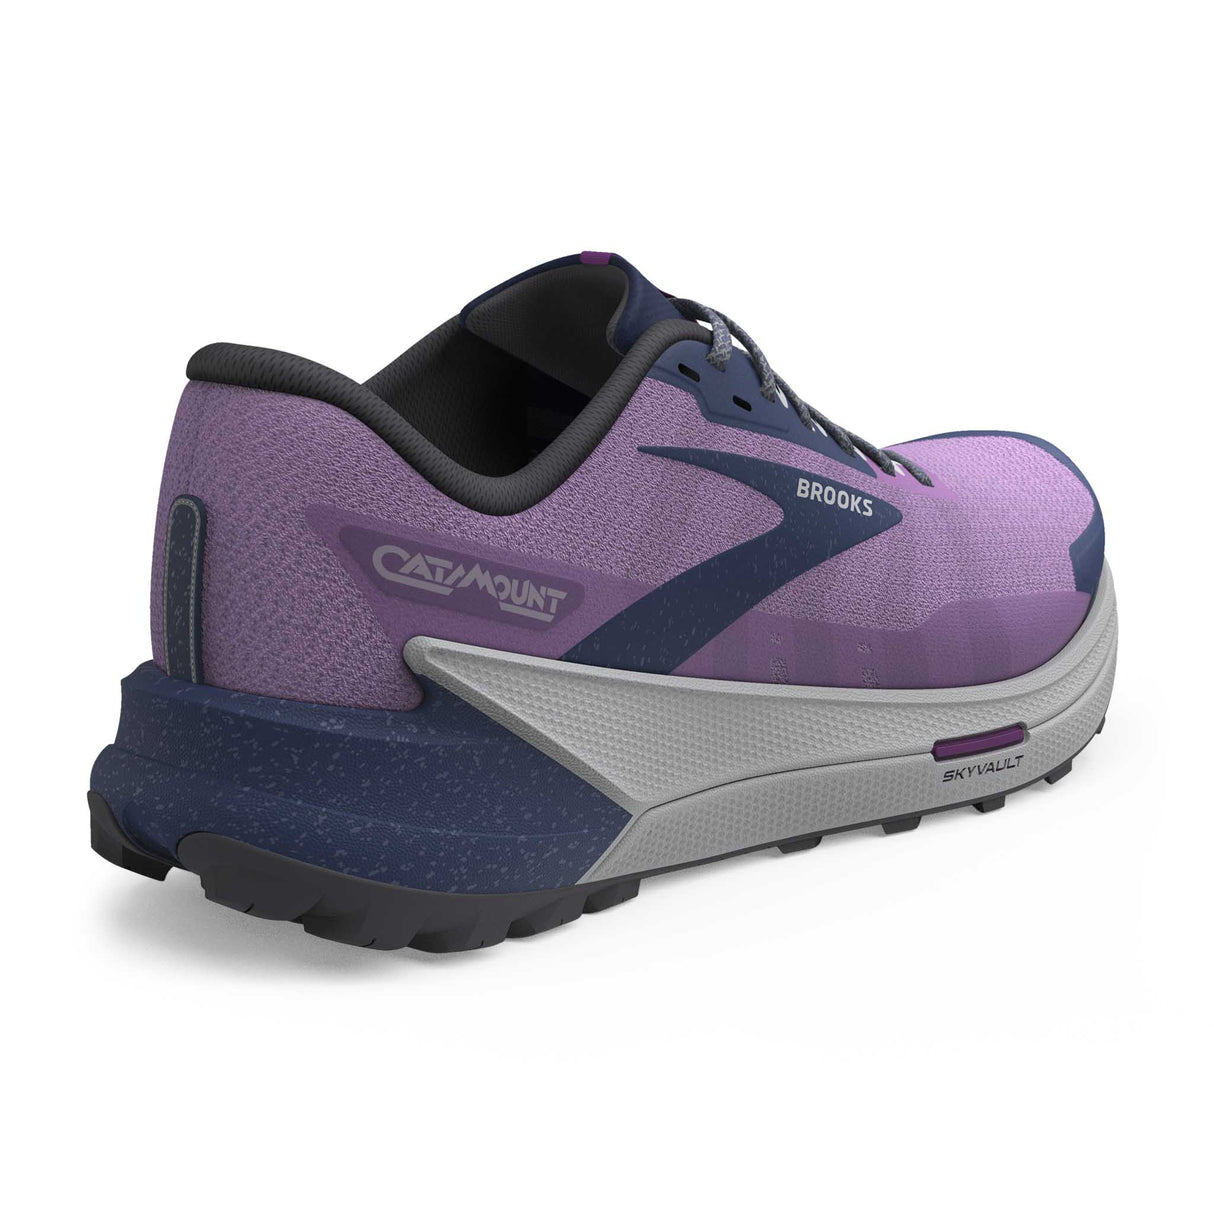 Brooks Catamount 2 chaussures de course à pied trail femme talon- Violet / Navy / Oyster